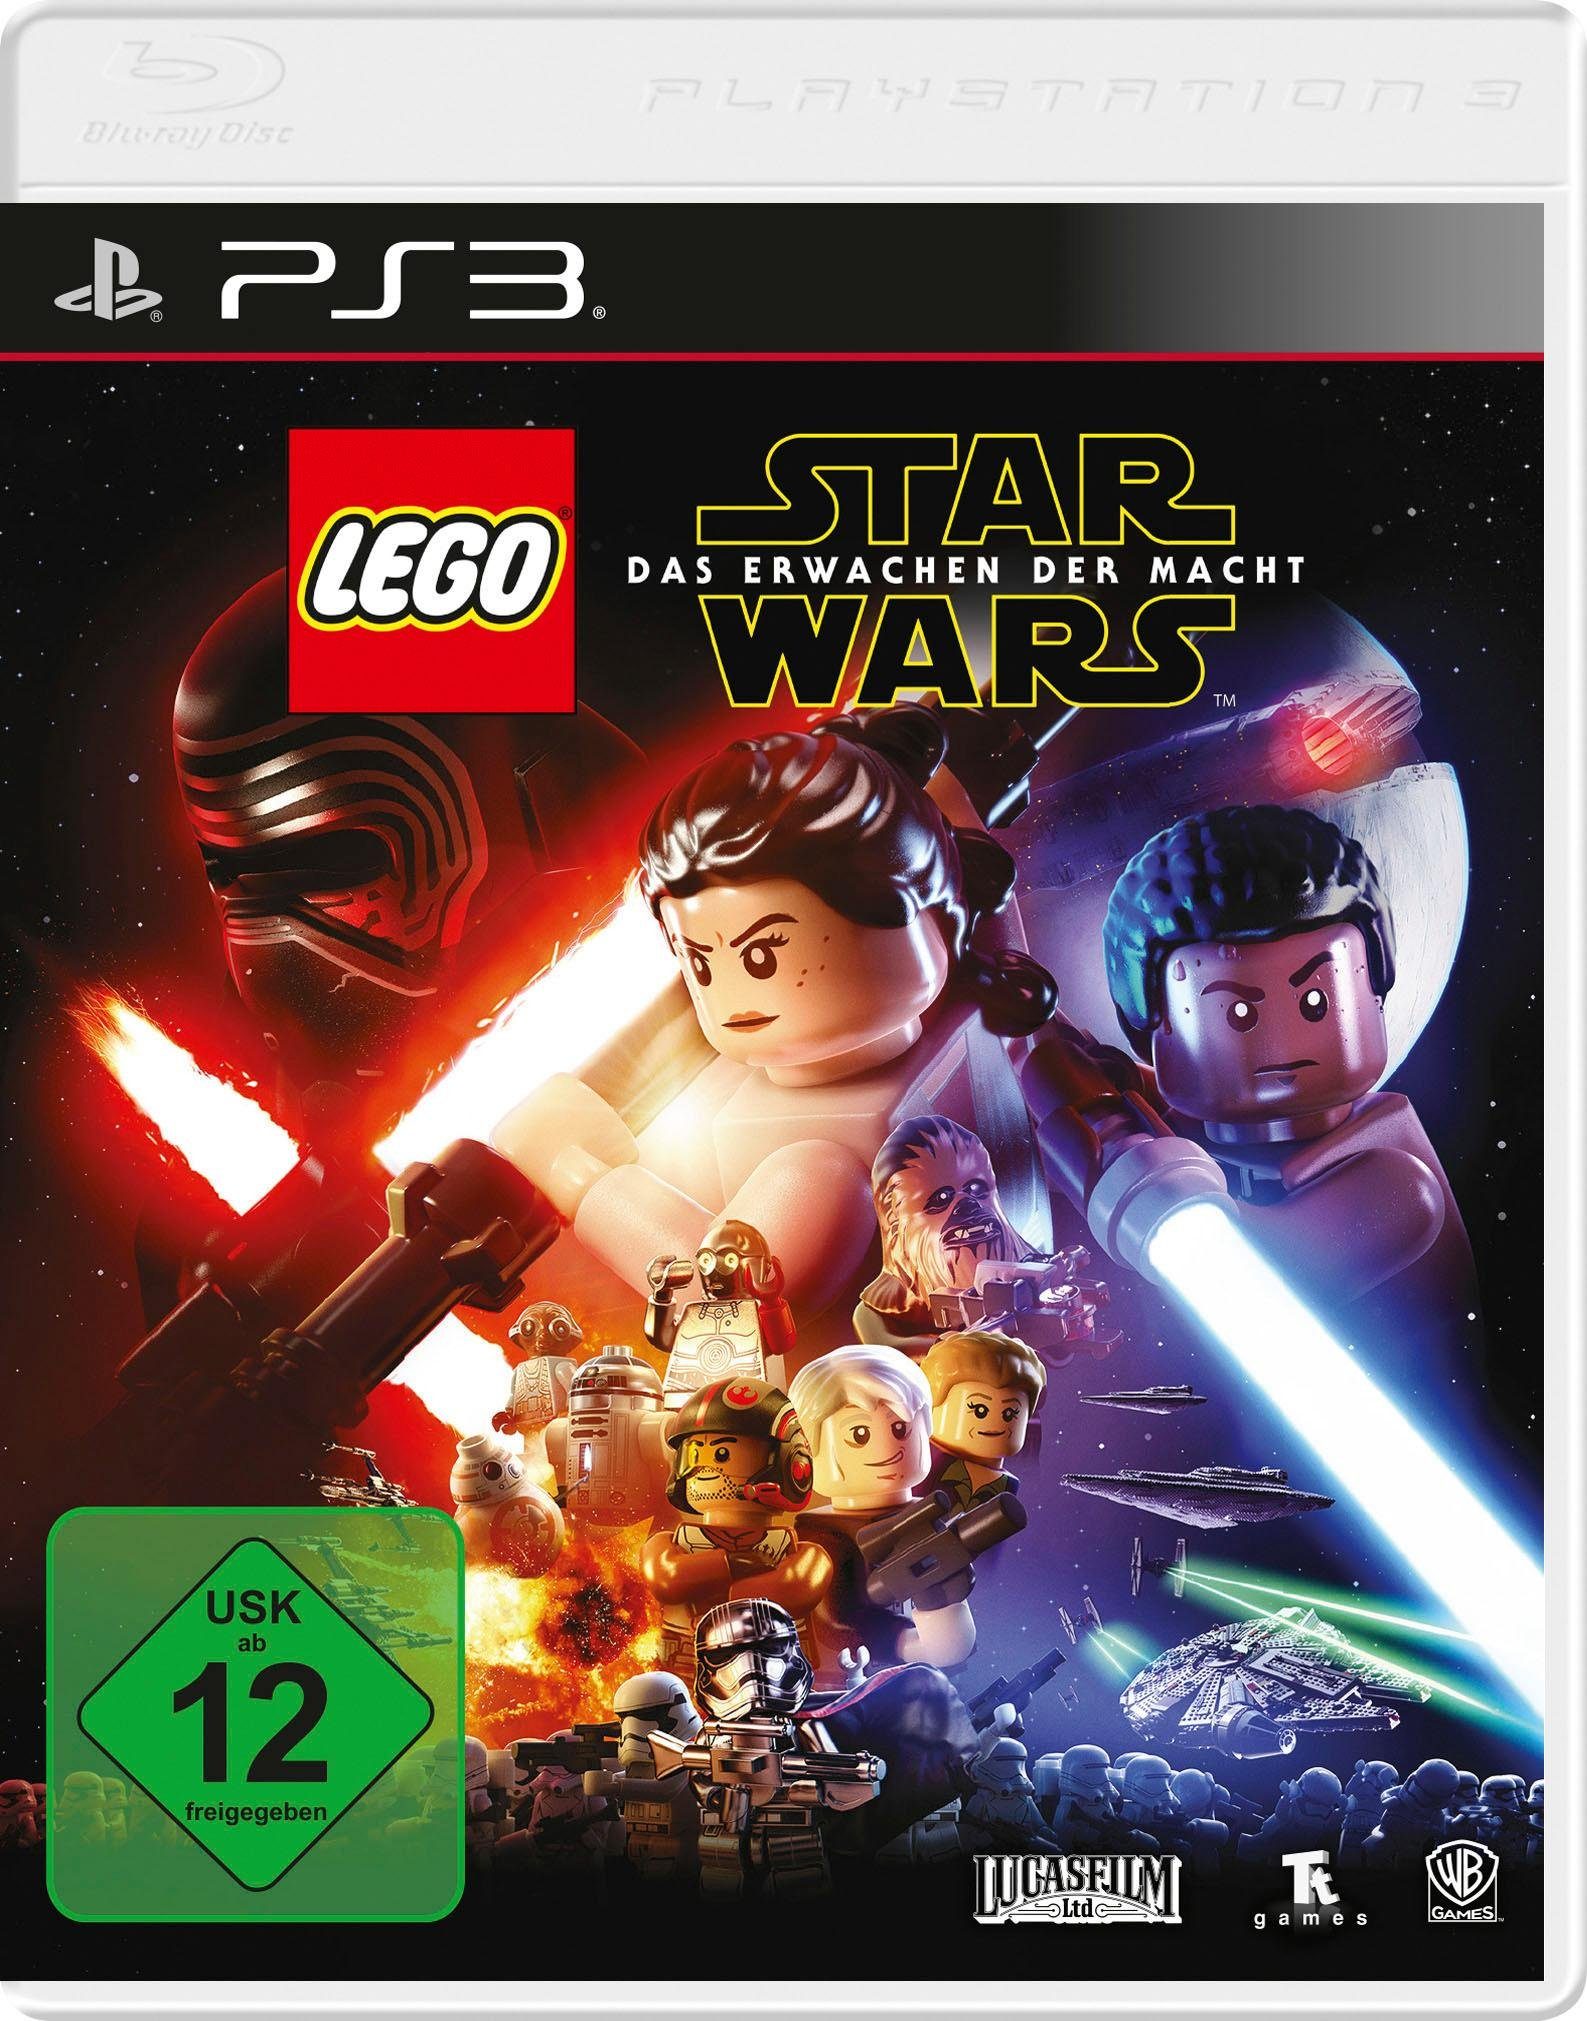 PlayStation Wars: Software Games Star Macht Erwachen der Pyramide Warner Lego Das 3,